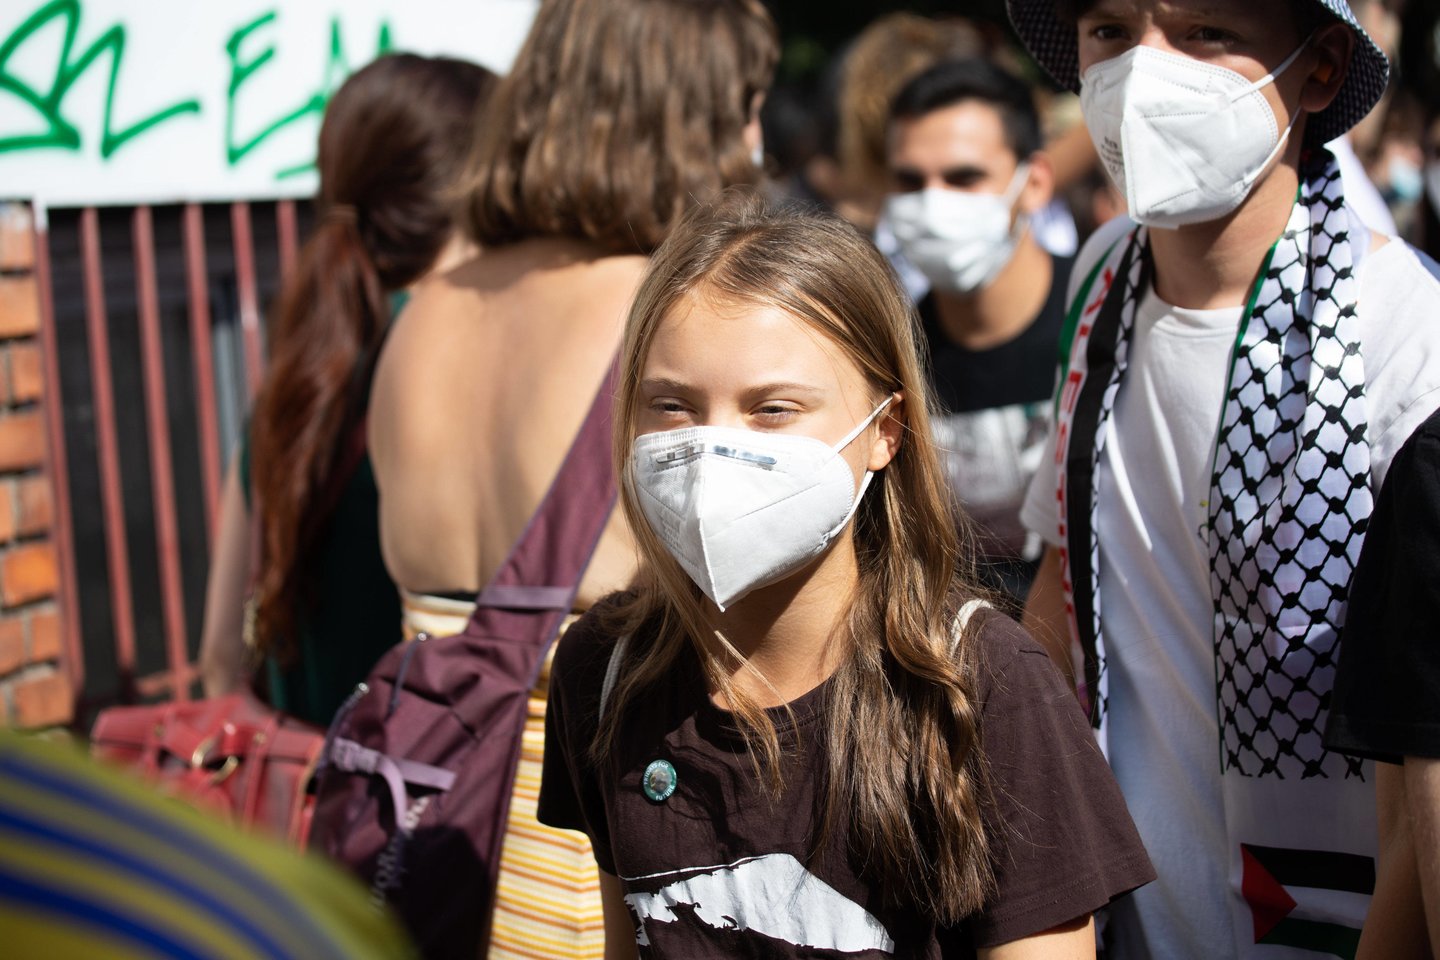  Milane vykstant jaunimo suvažiavimui G. Thunberg vadovauja klimato protestuotojų eitynėms.  <br> SIPA/Scanpix nuotr.